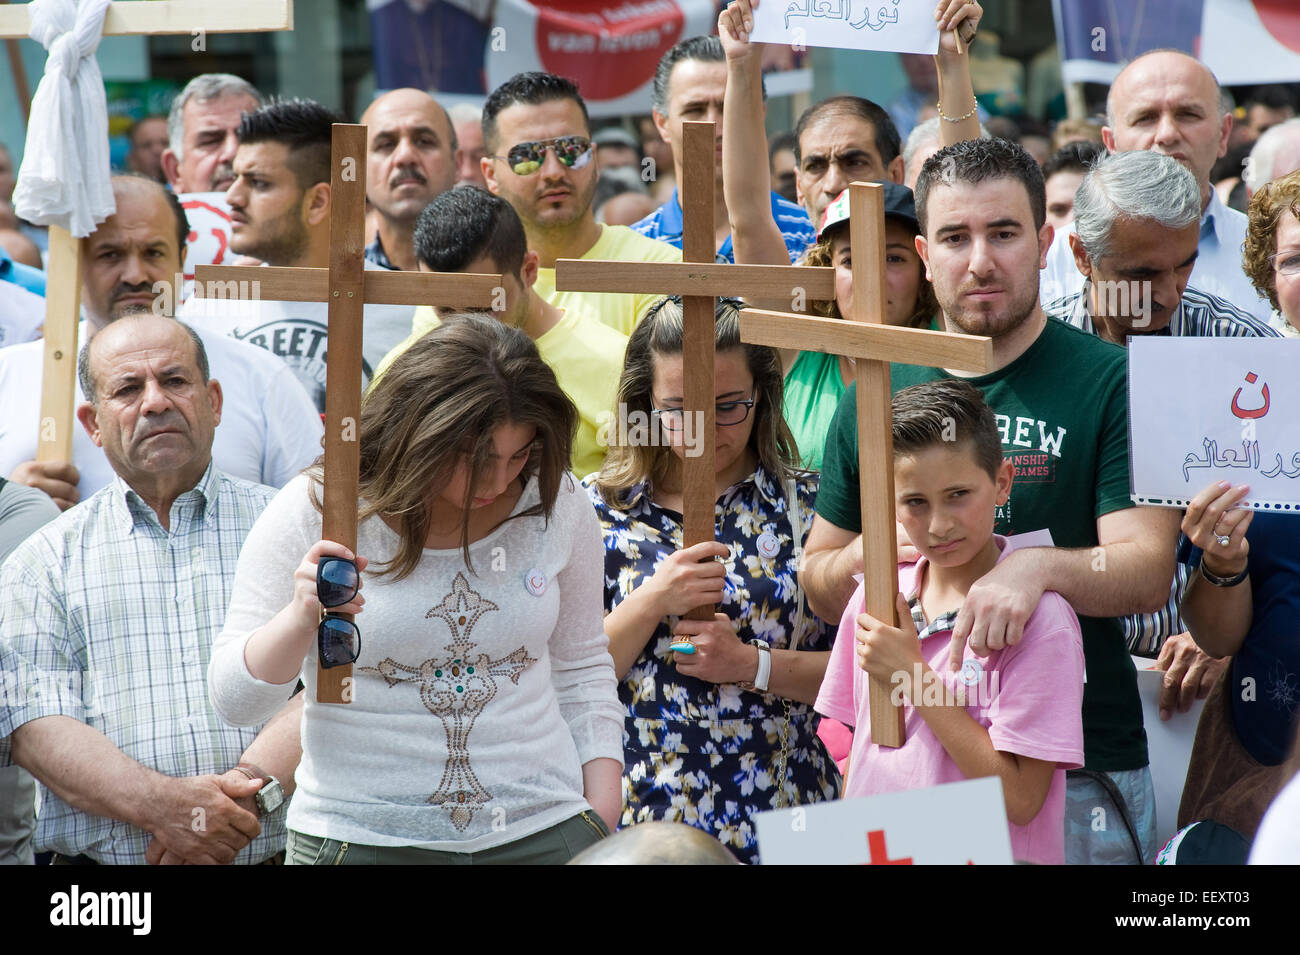 Un minuto de silencio durante una manifestación organizada por suryoye cristianos contra la matanza de cristianos en Irak Foto de stock